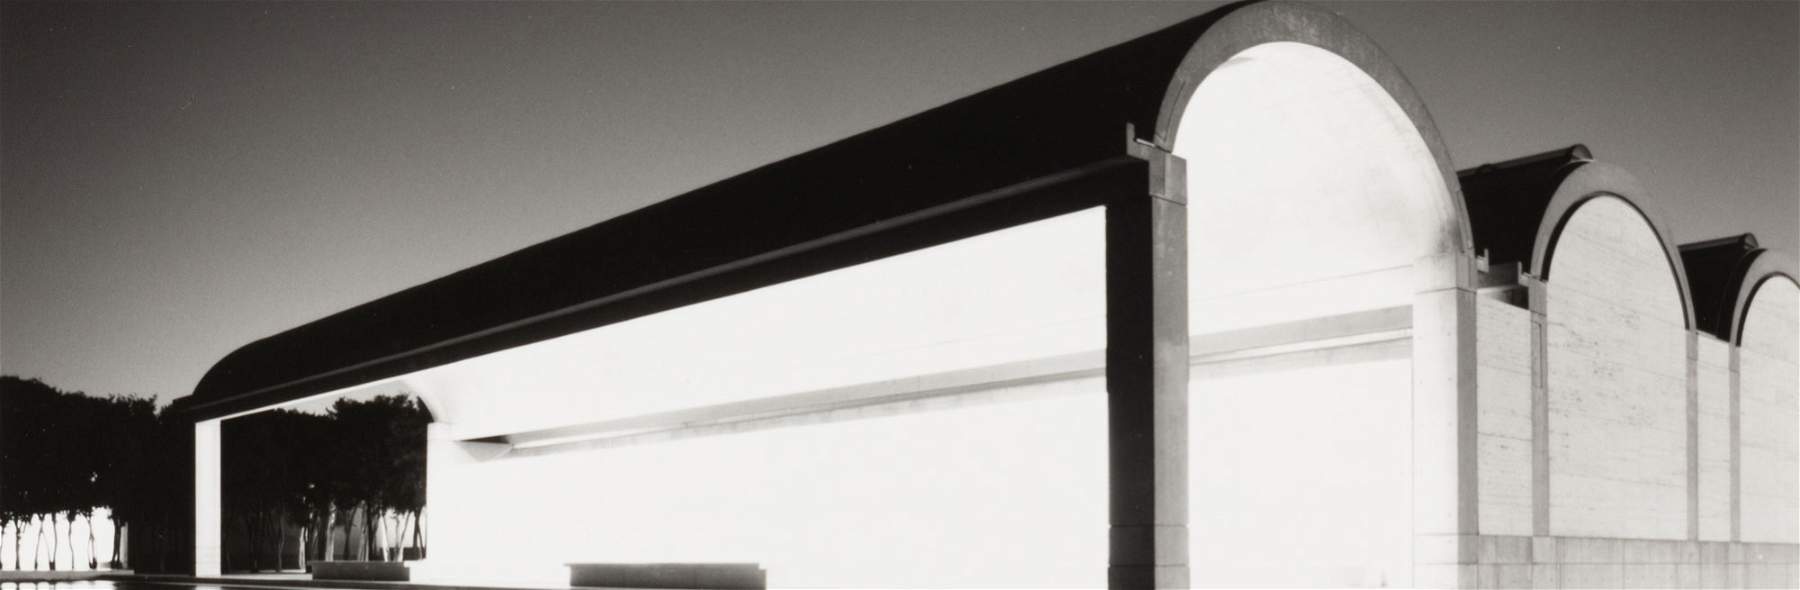 Au MAXXI, l'architecture de Louis Kahn dans les photographies de Roberto Schezen